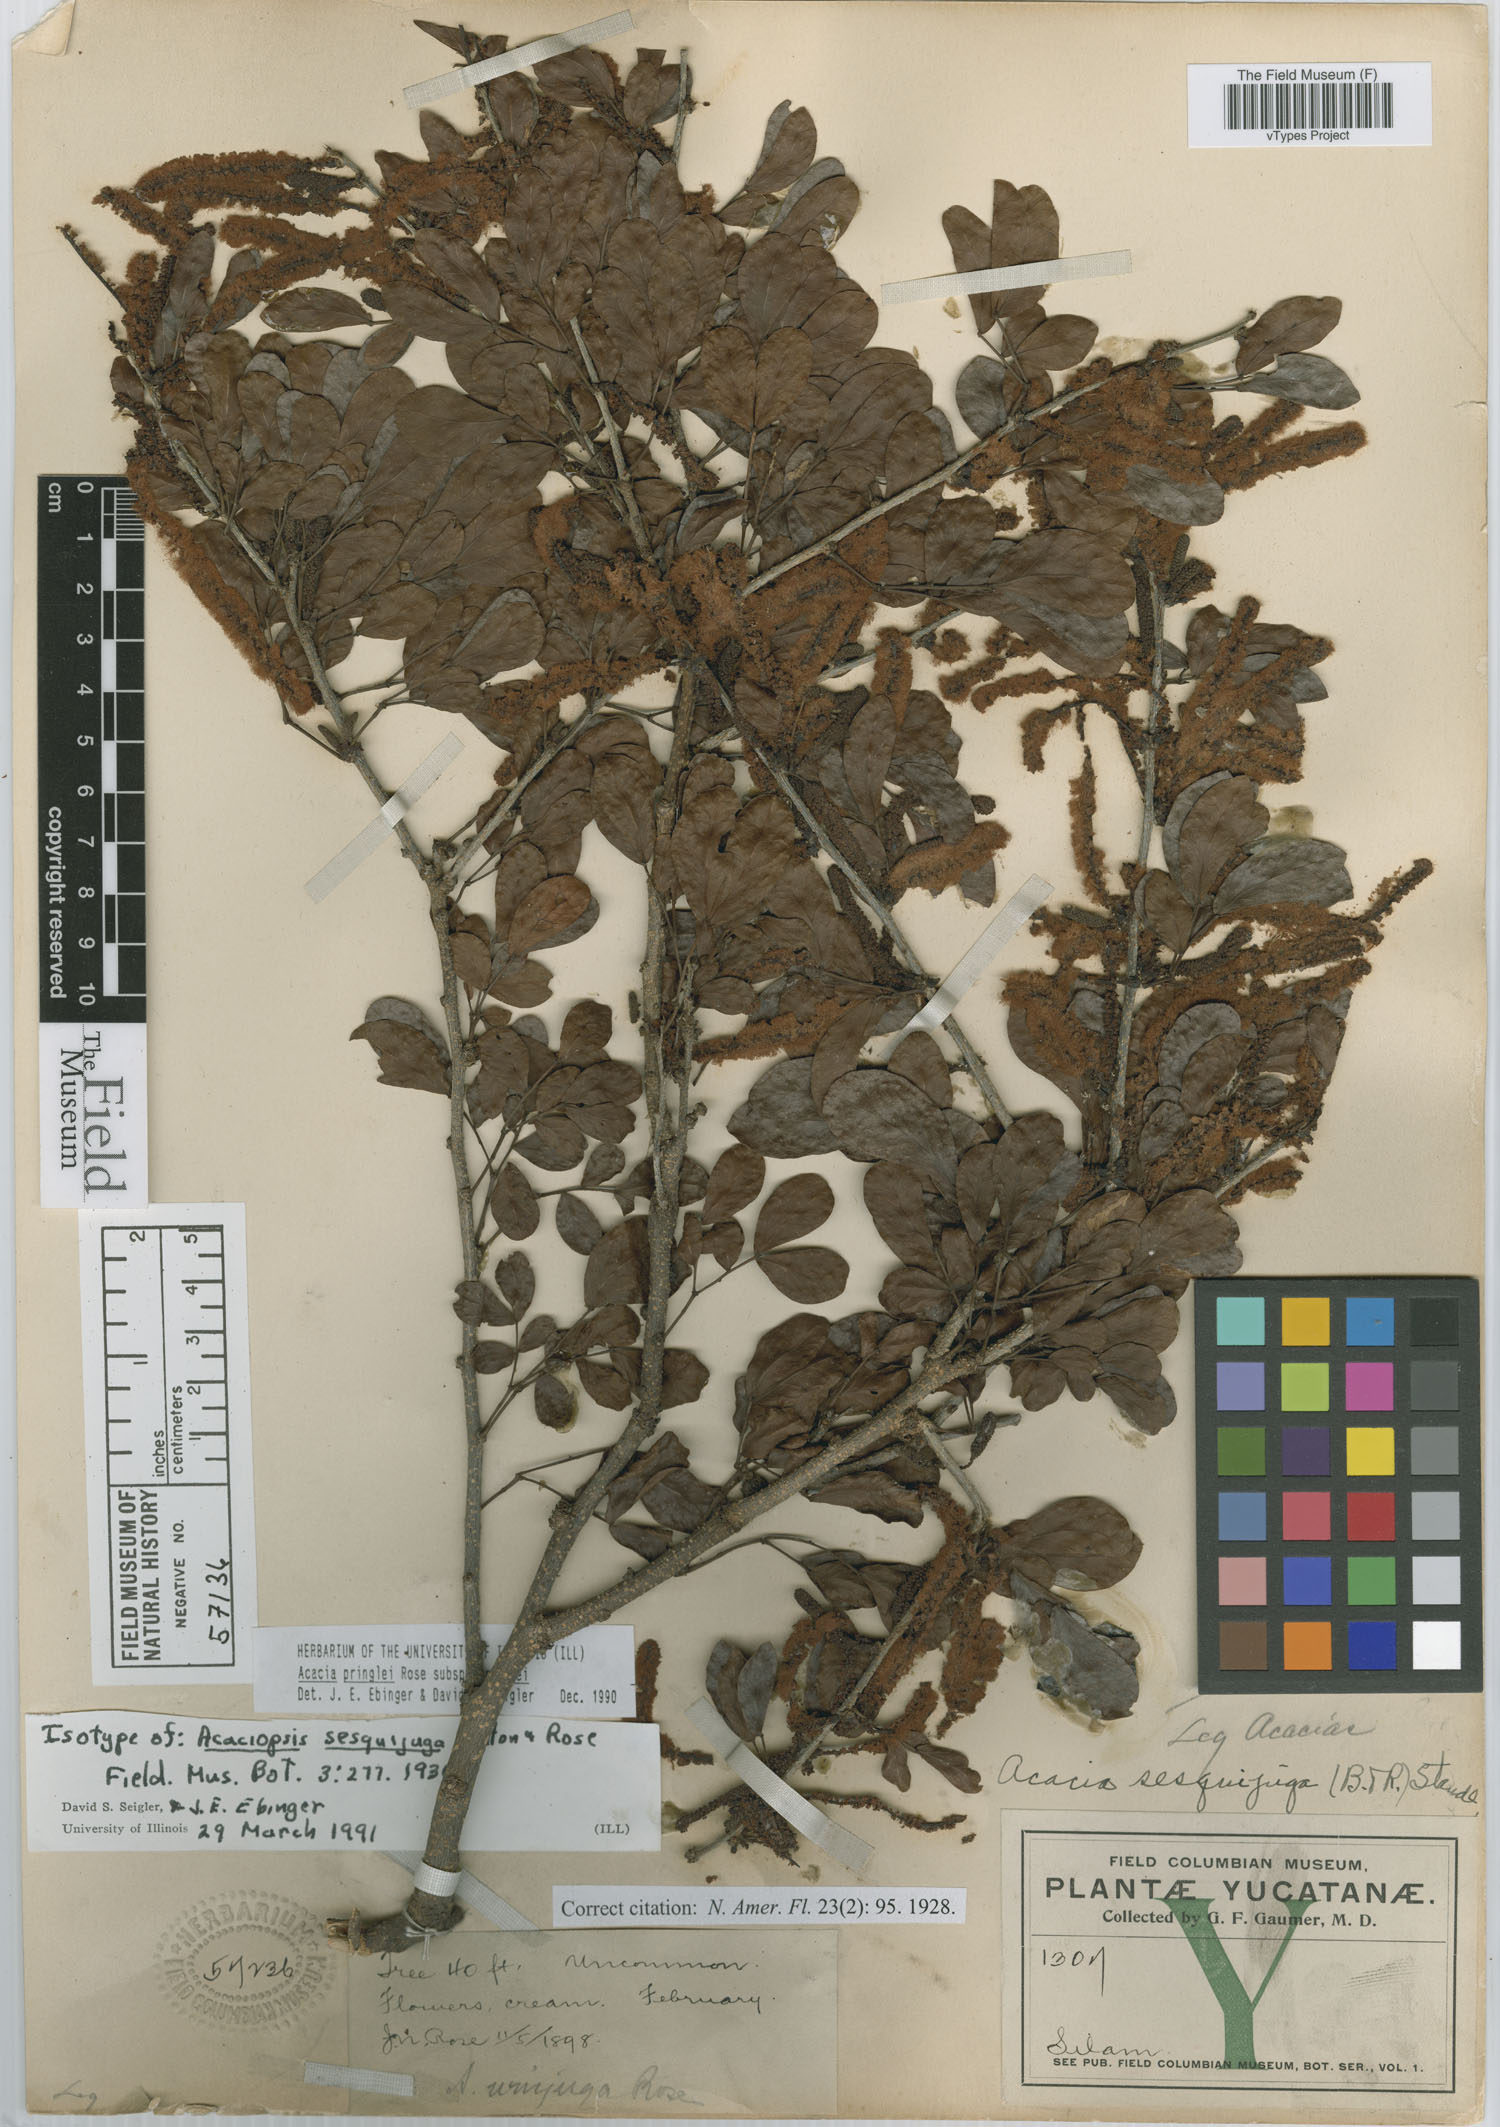 Acacia californica subsp. pringlei image